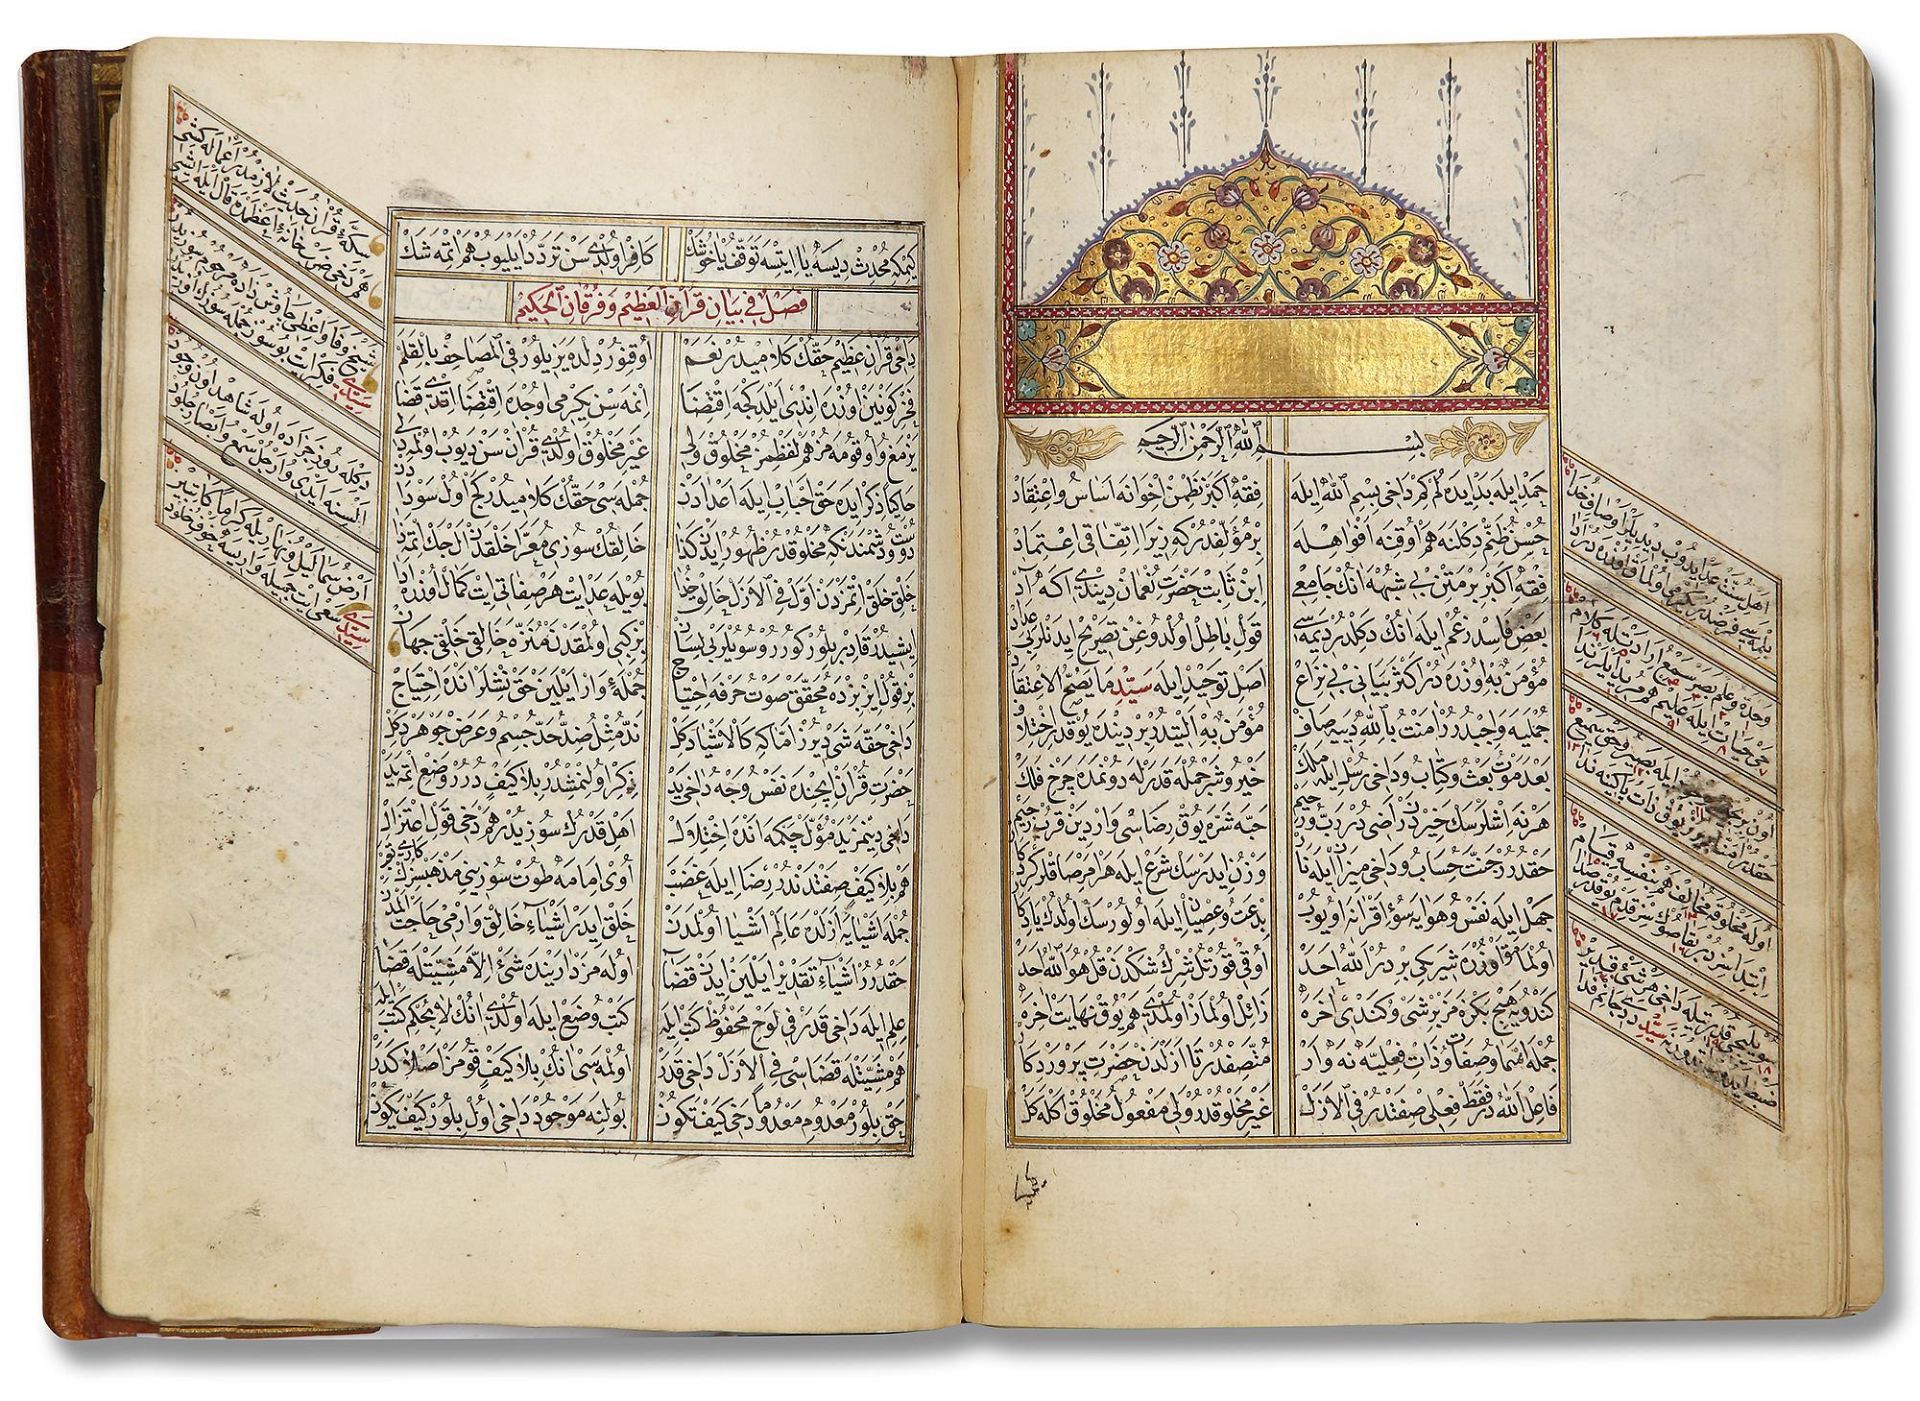 AN OTTOMAN MANUSCRIPT COPIED BY YUSUF IBN ABD AL-WAHHAB 1099 AH/1688 AD - Image 13 of 16